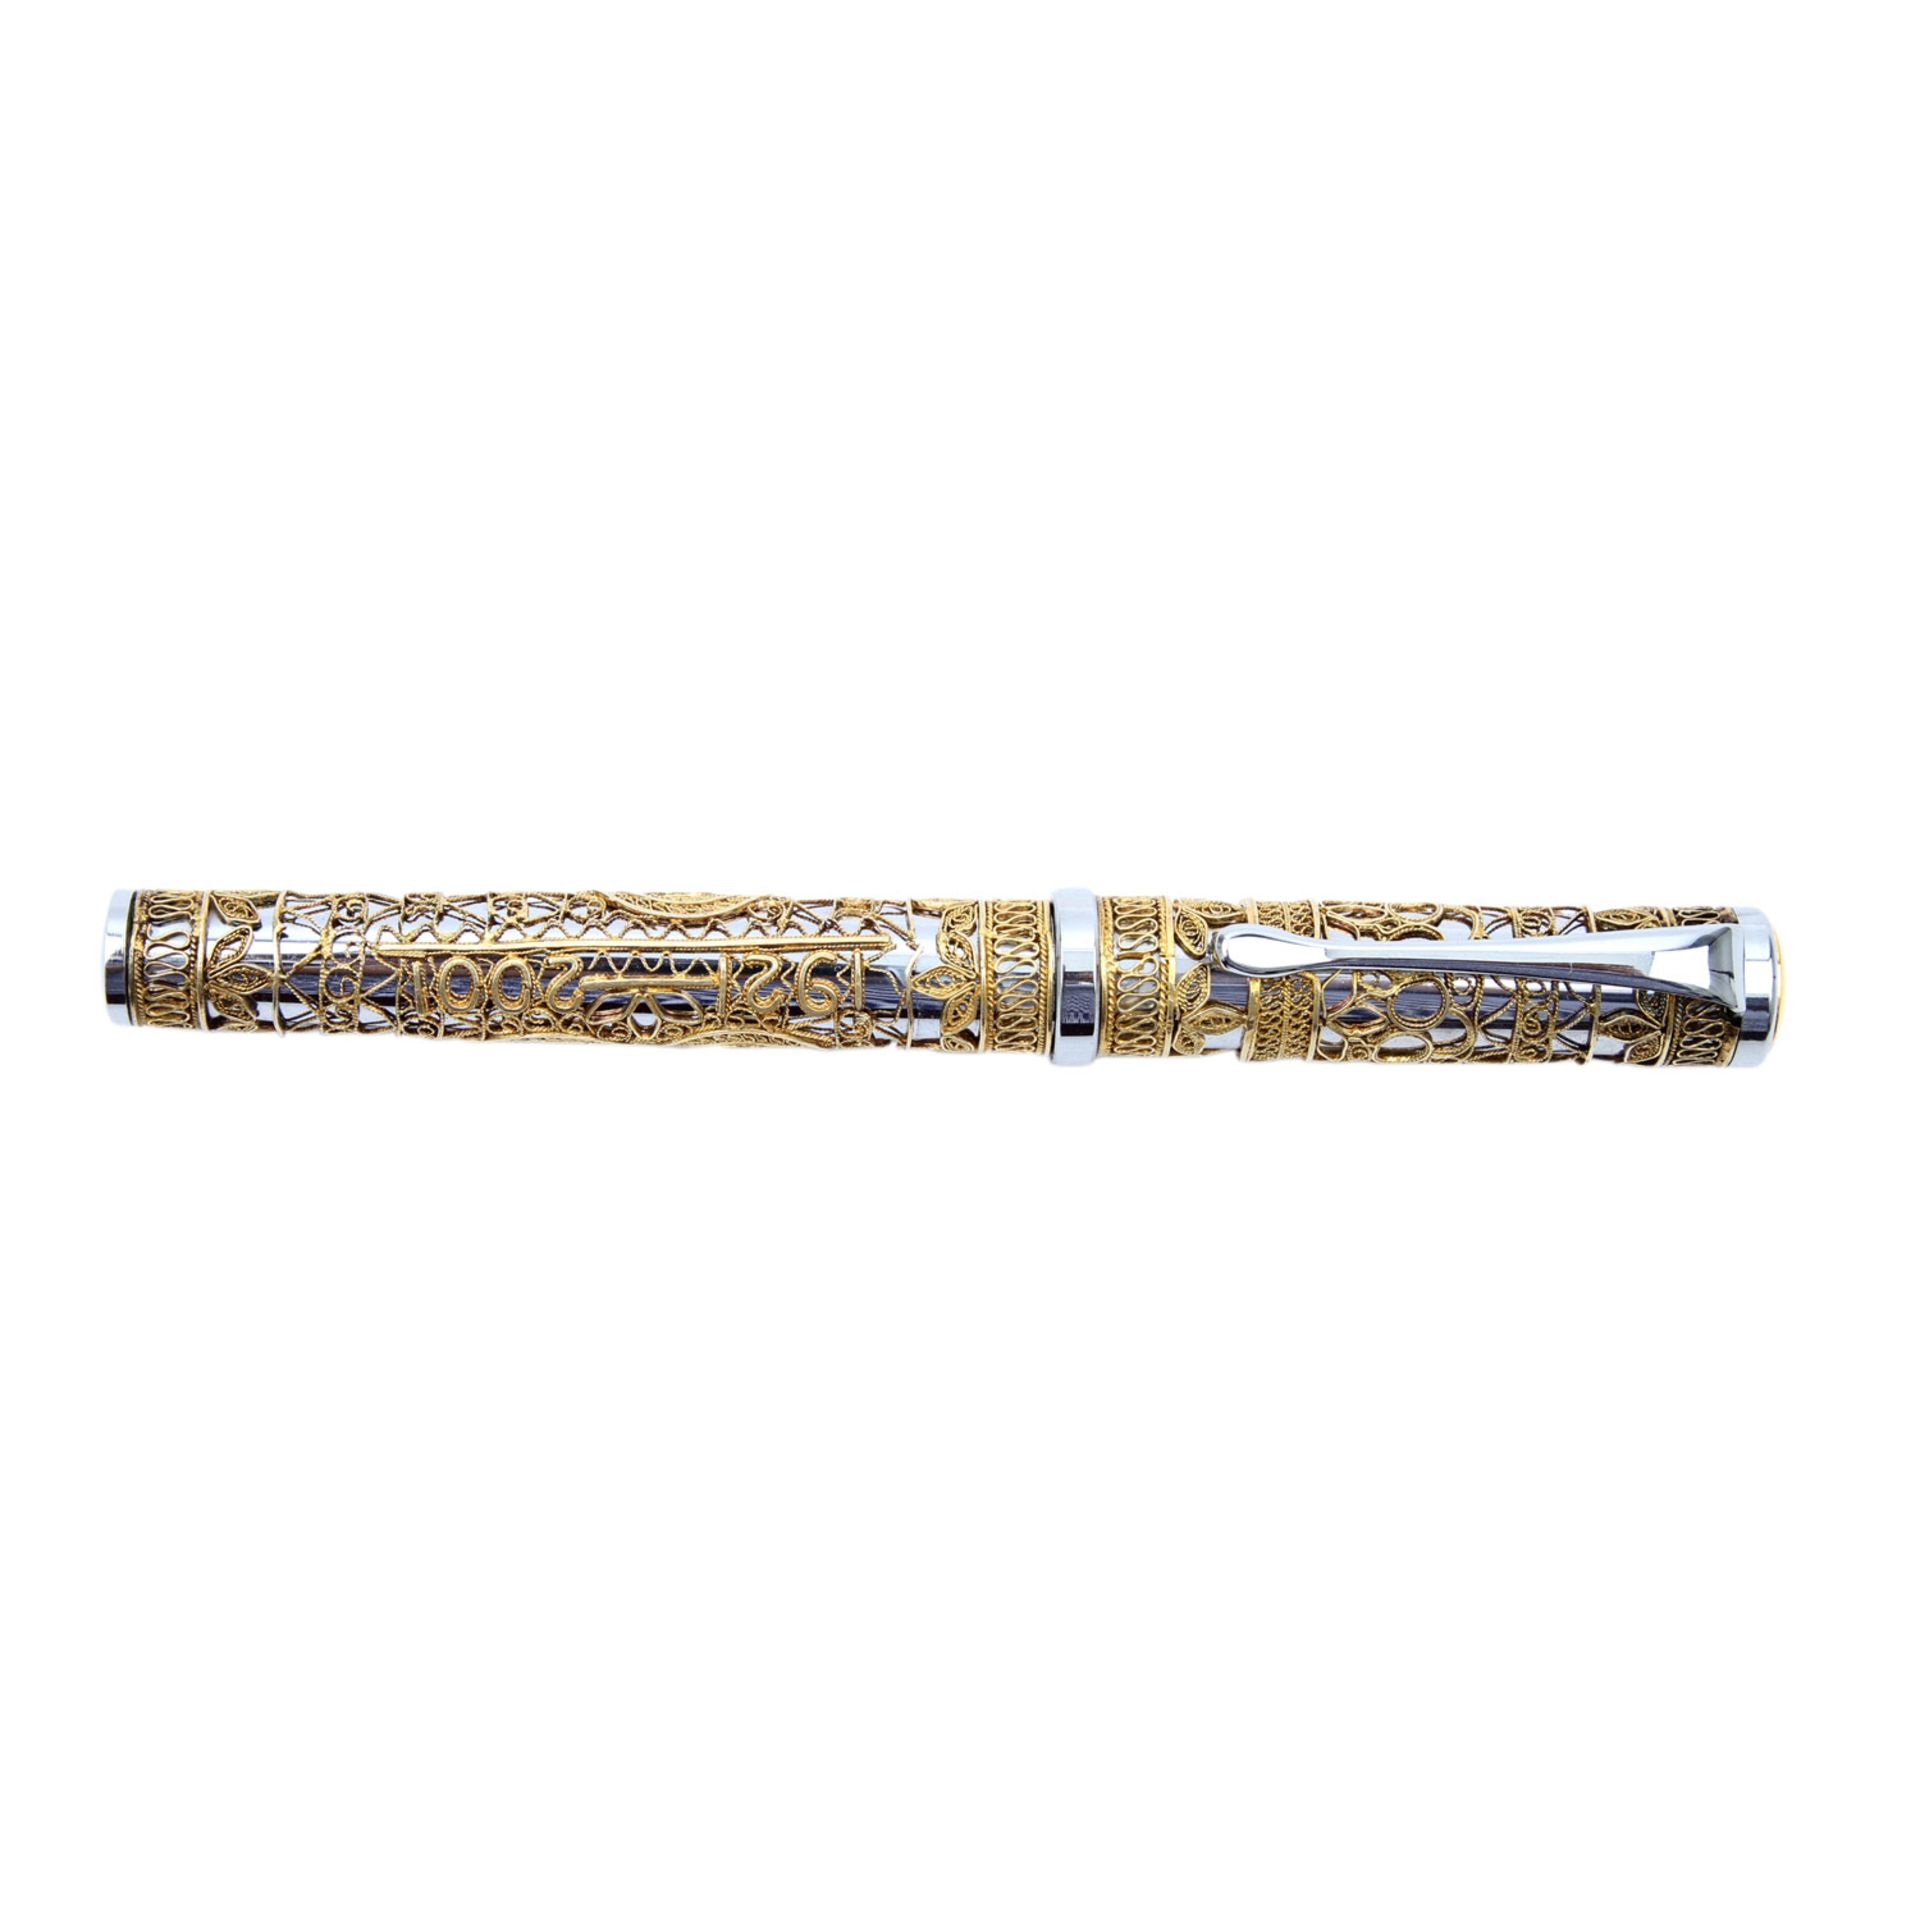 Füllfederhalter aus China 20. Jh. mit goldfarbenen fein gearbeiteten Hammer und Sichel- - Bild 2 aus 6